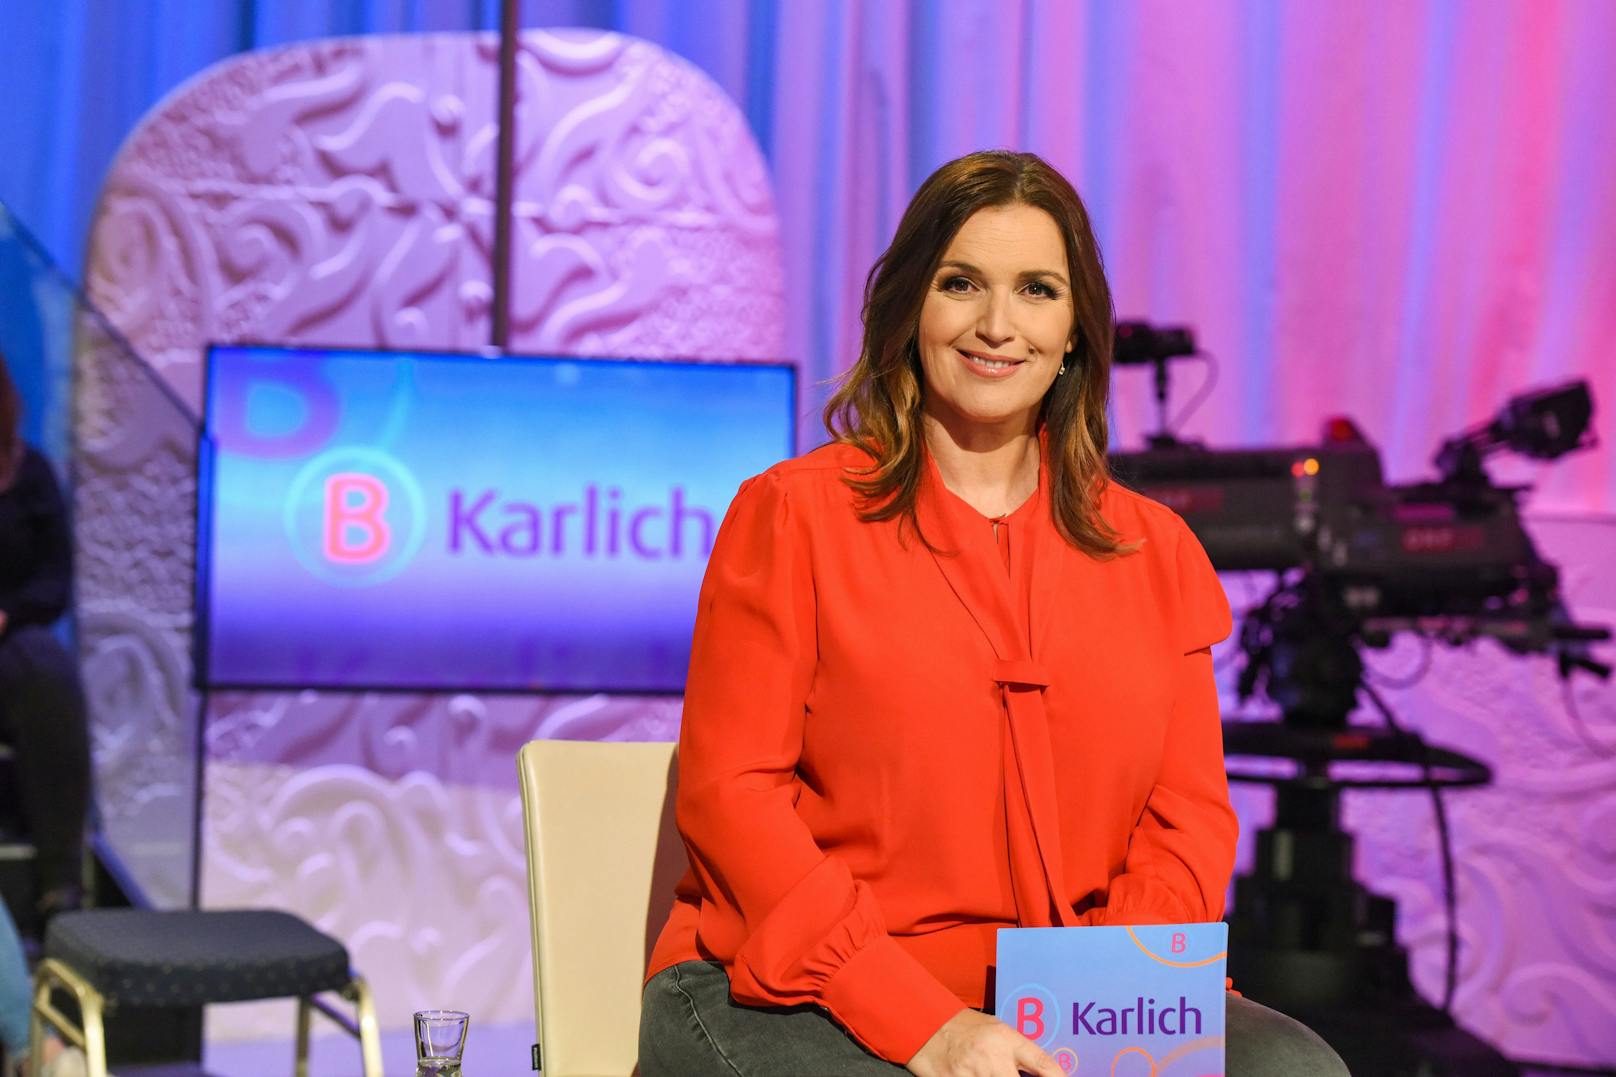 "Barbara Karlich Show" vor dem Aus – was der ORF plant